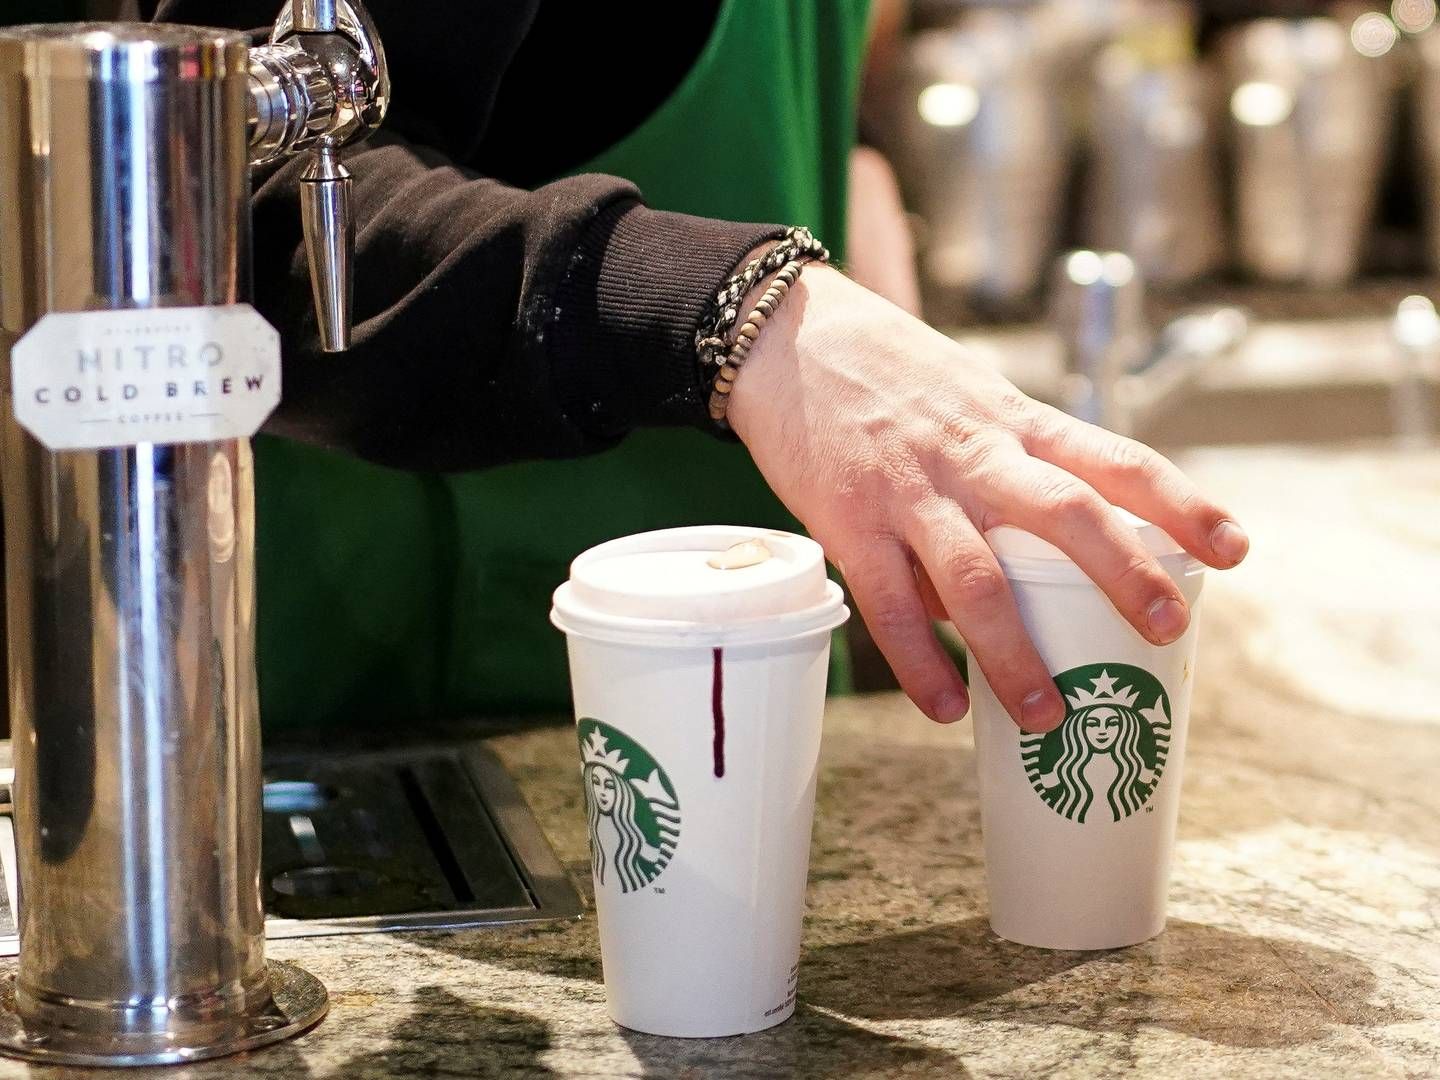 Den globale kaffekæde Starbucks har hævet priserne på deres produkter grundet høje renter og øgede omkostninger, hvilket har fået forbrugeren til at fravælge kaffekæden i stigende grad. | Foto: Henry Nicholls/Ritzau Scanpix.